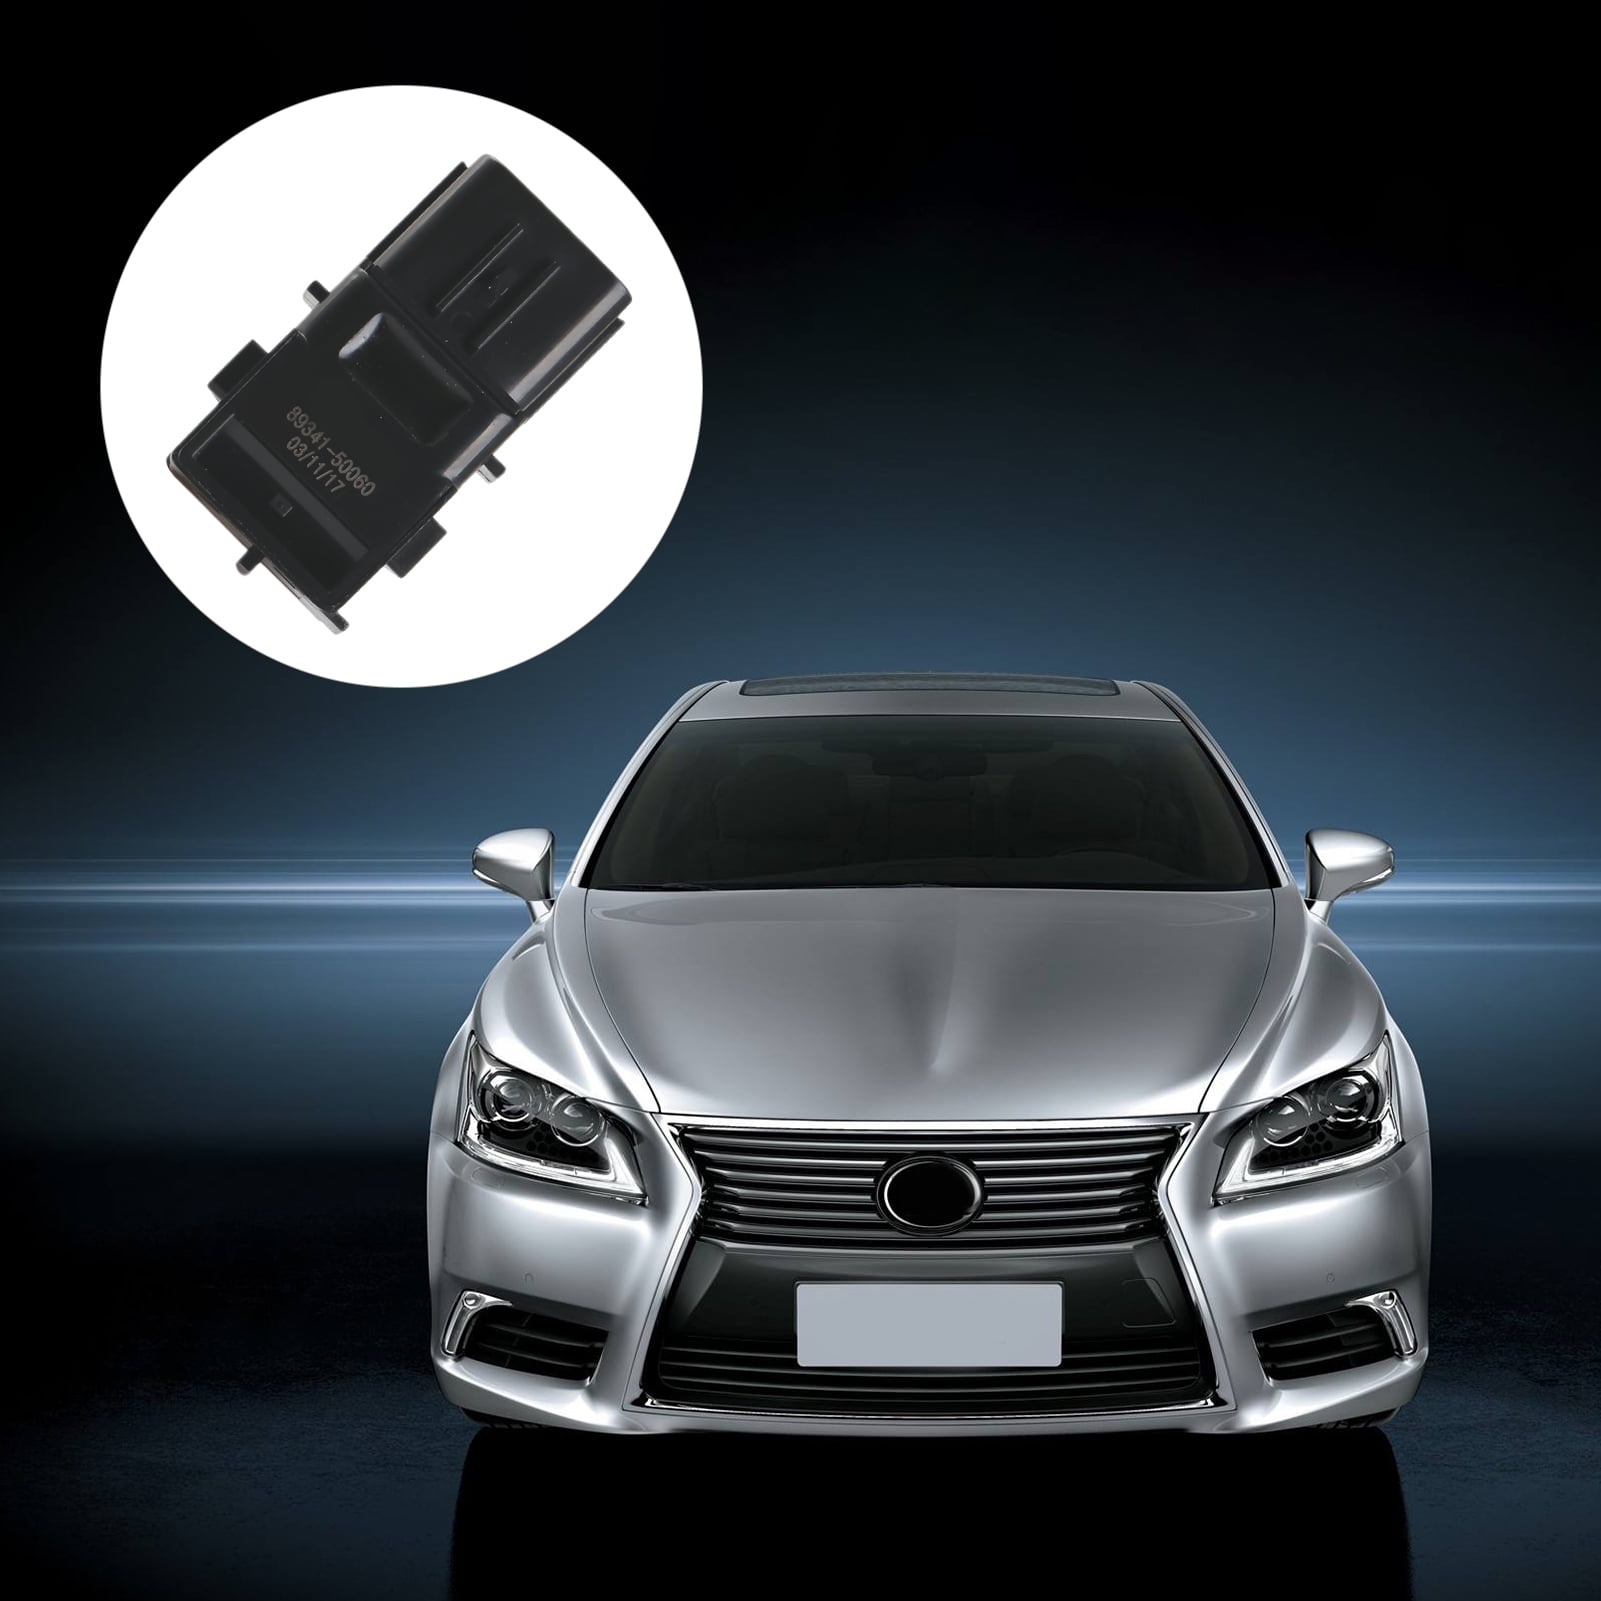 Fit for Lexus GS300 GS350 GS430 GS450h GS460 IS F IS250 IS350 LS430 INEEDUP Reverse Backup Parking Sensor Park Assist Sensor